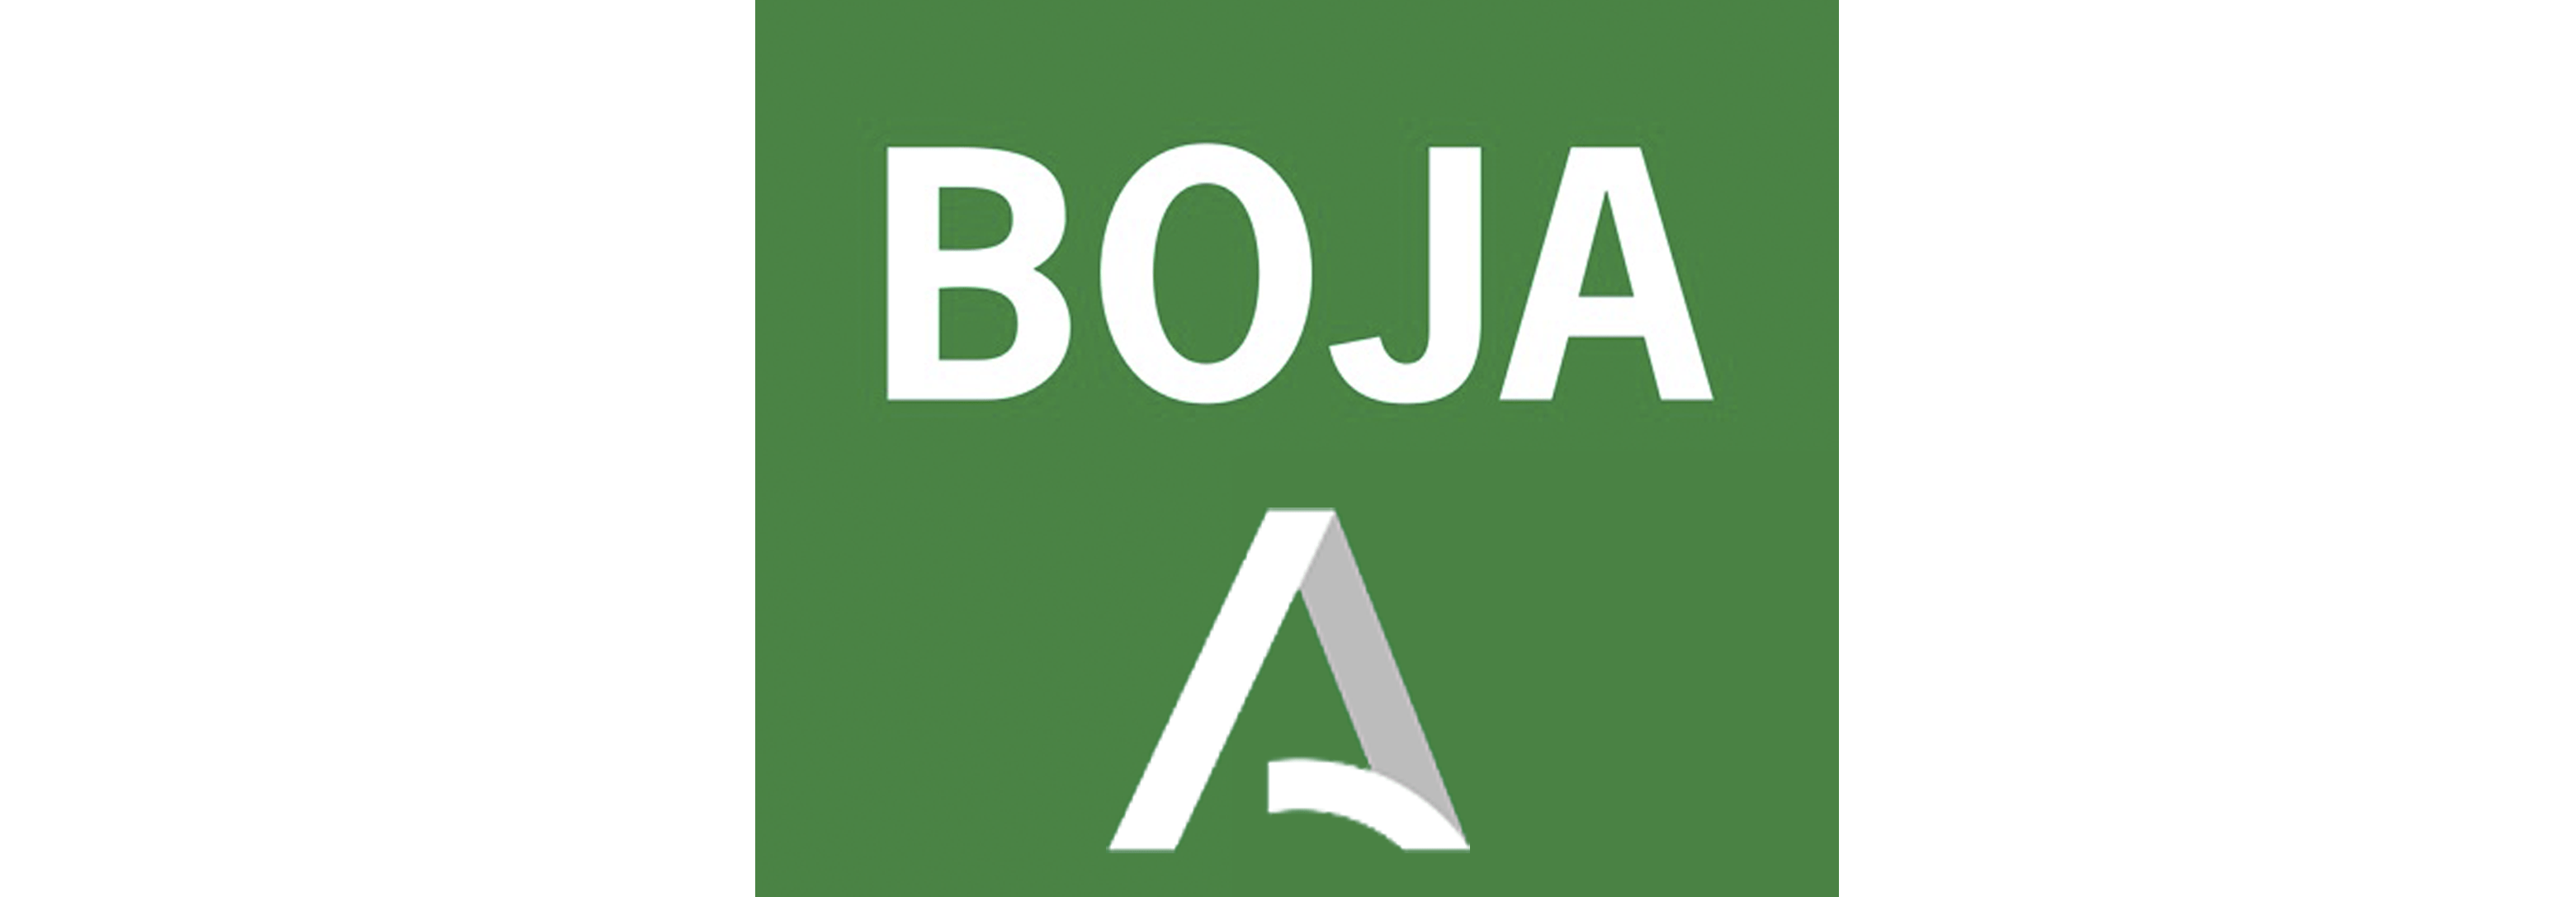 Logo y enlace a BOJA